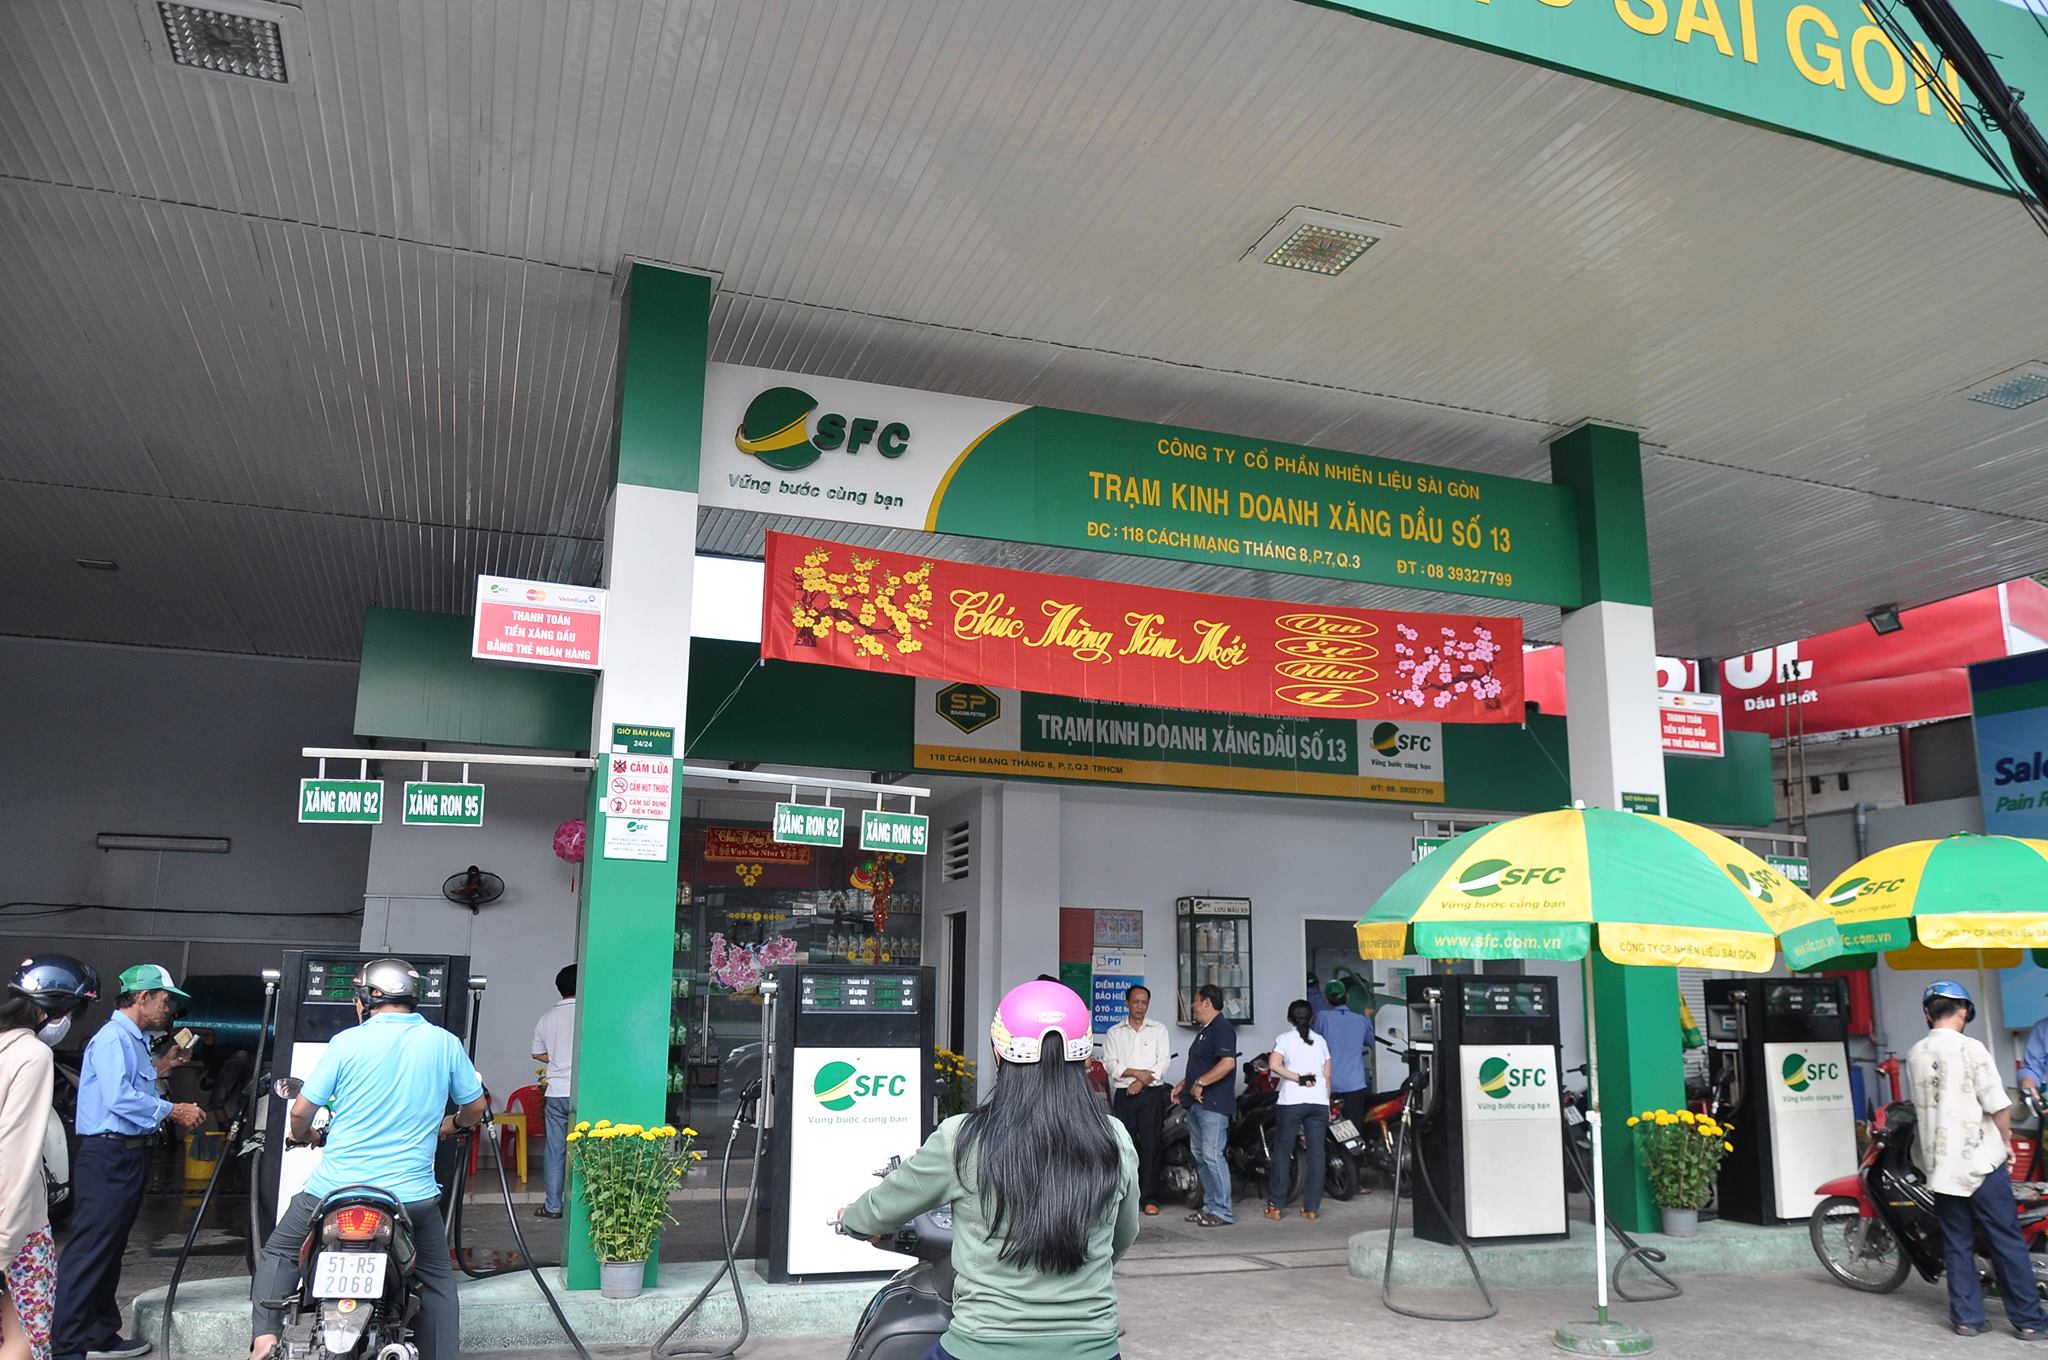 Cty CP Nhiên liệu Sài Gòn – Cưa hàng xăng dầu số 13 - 118 Cách Mạng Tháng Tám, Thành phố Hồ Chí Minh